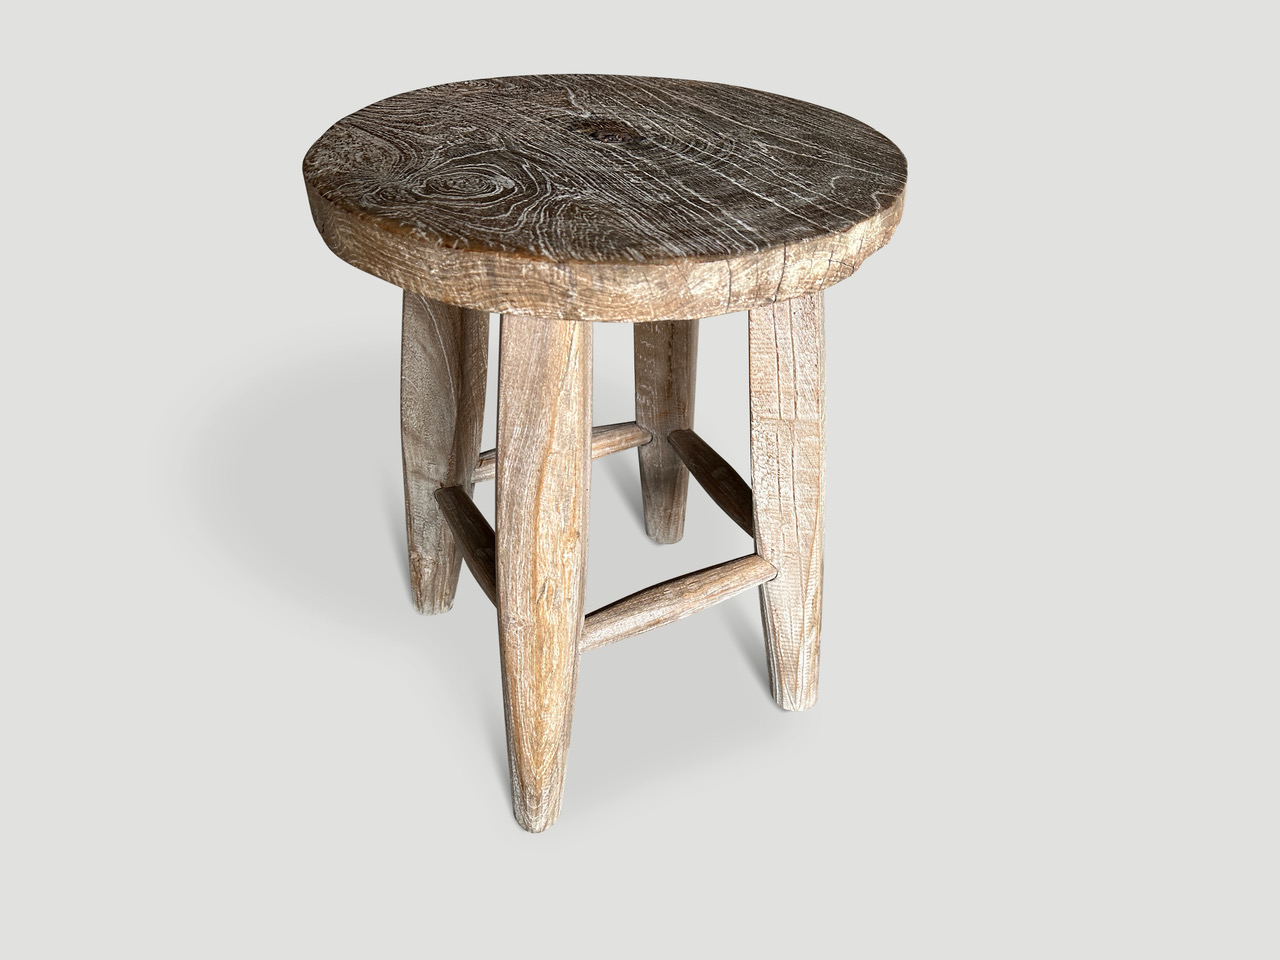 minimalist side table or stool